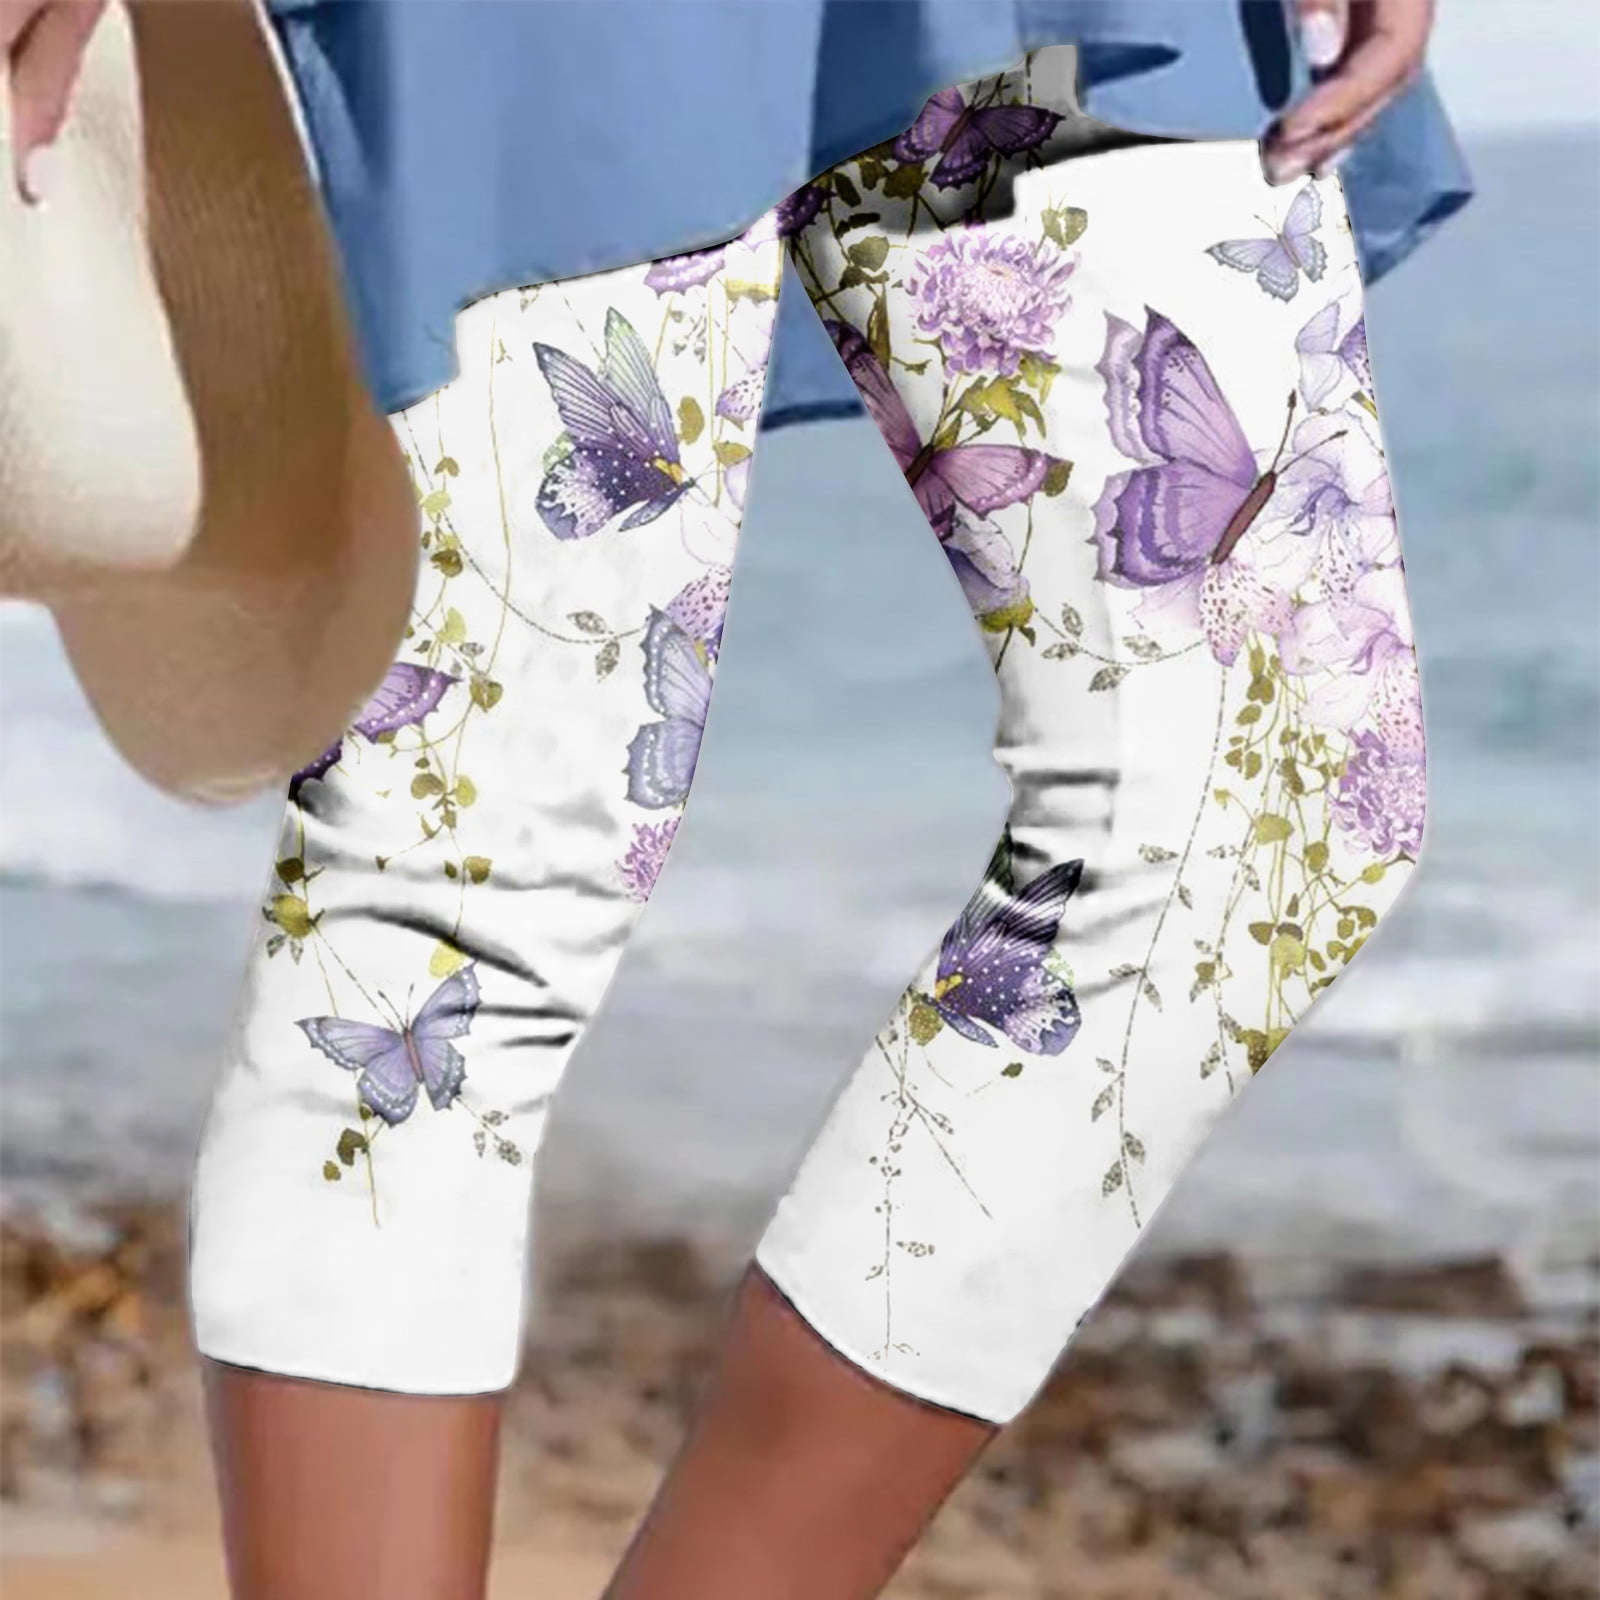 Gaecuw Capri Pants for Women Casual Summer Capri Leggings Slim Fit ...